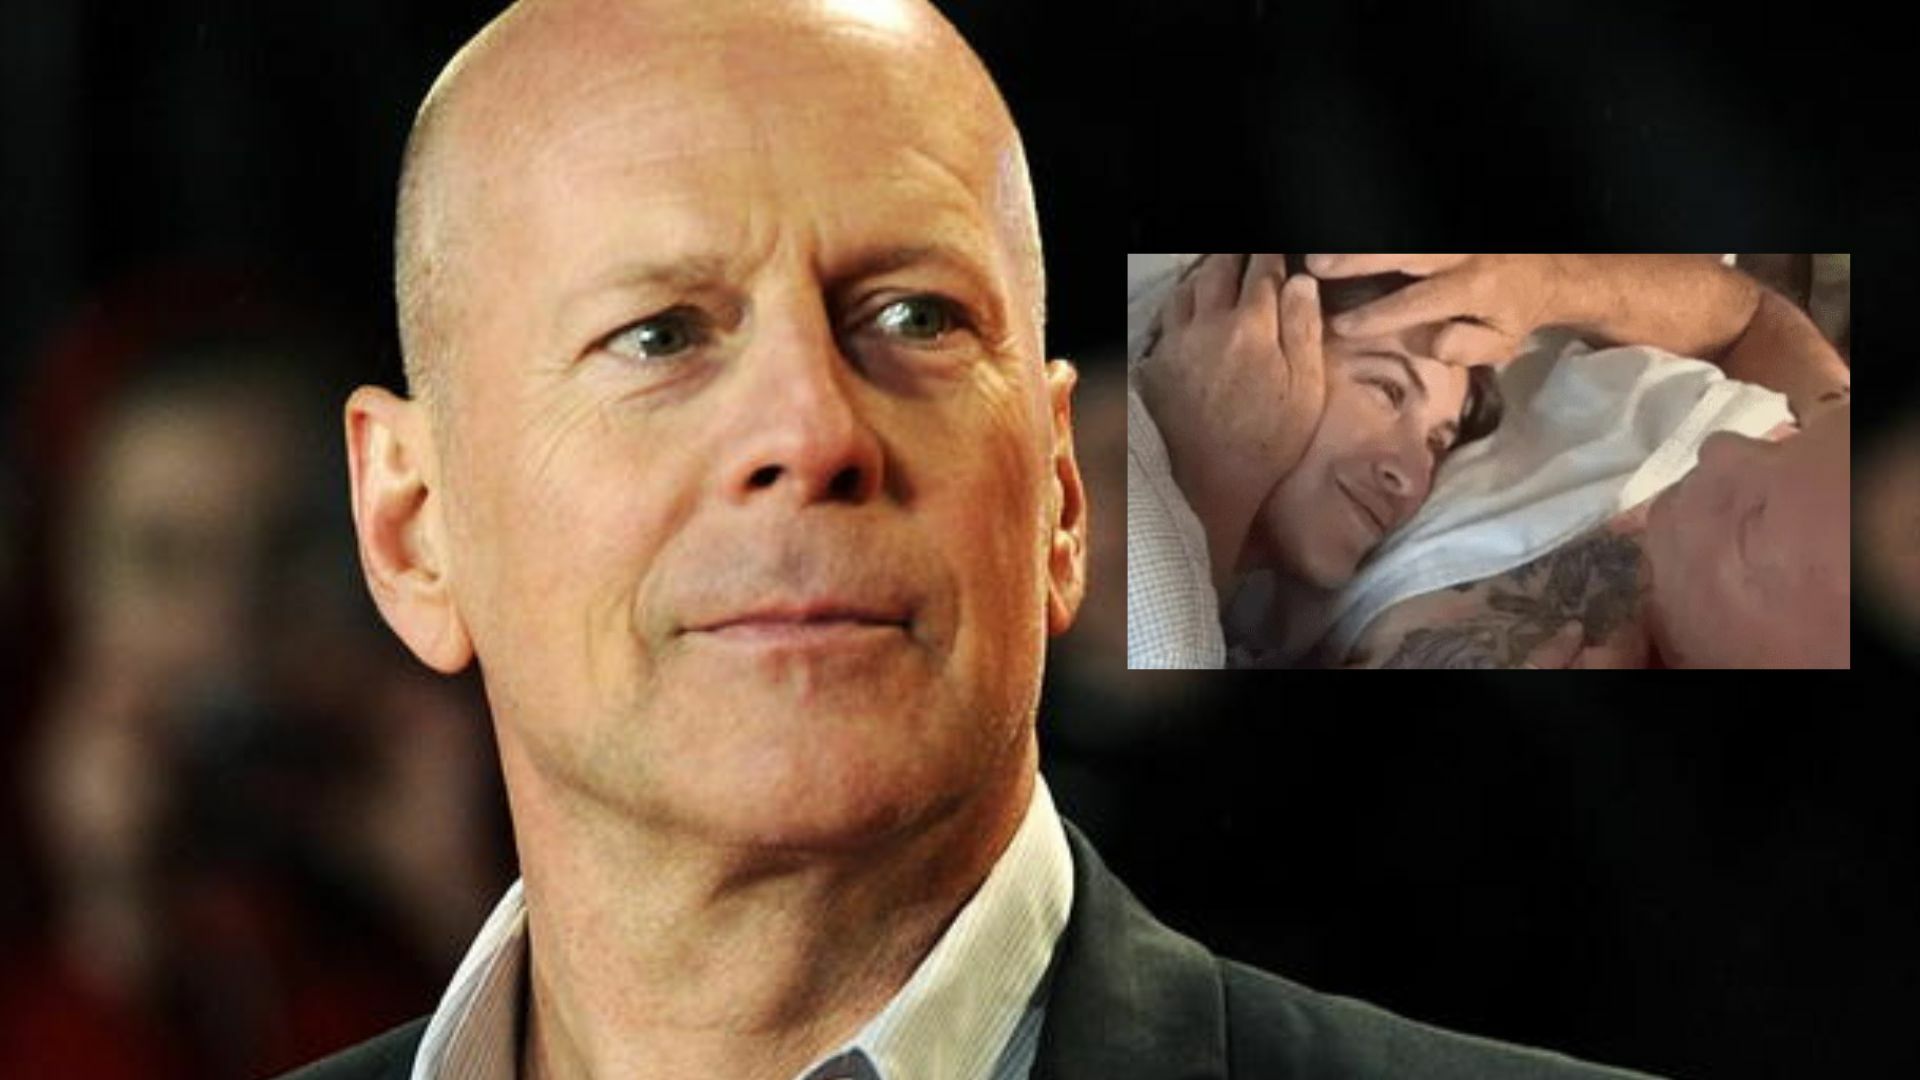 Hija de Bruce Willis conmueve las redes con foto junto a su padre enfermo . Noticias en tiempo real